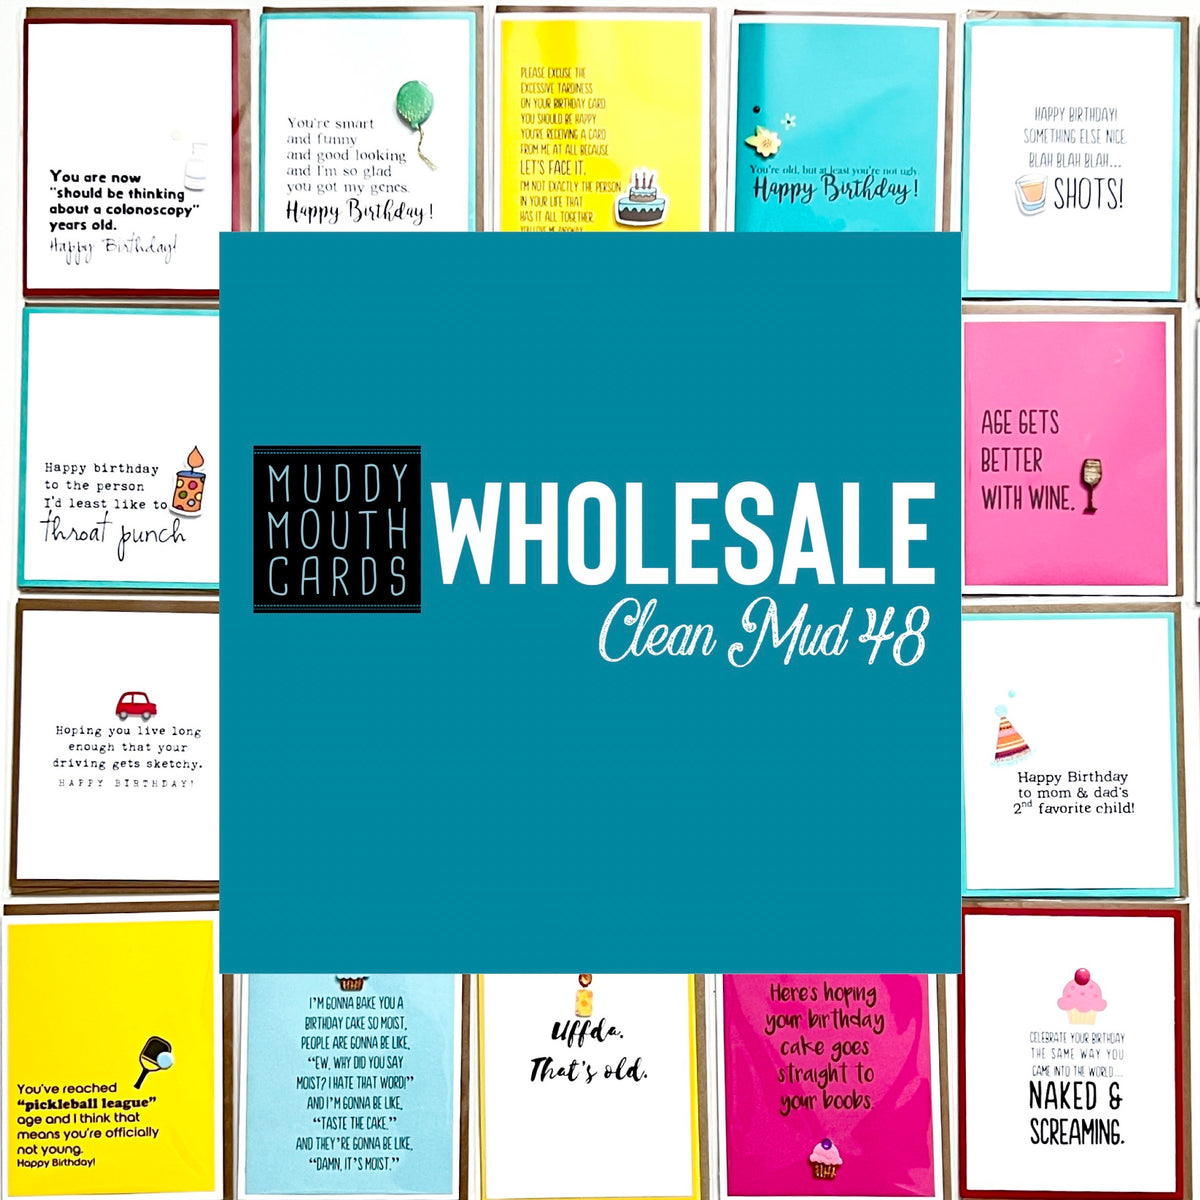 Wholesale— Clean Mud (no profanity) Best Seller 48